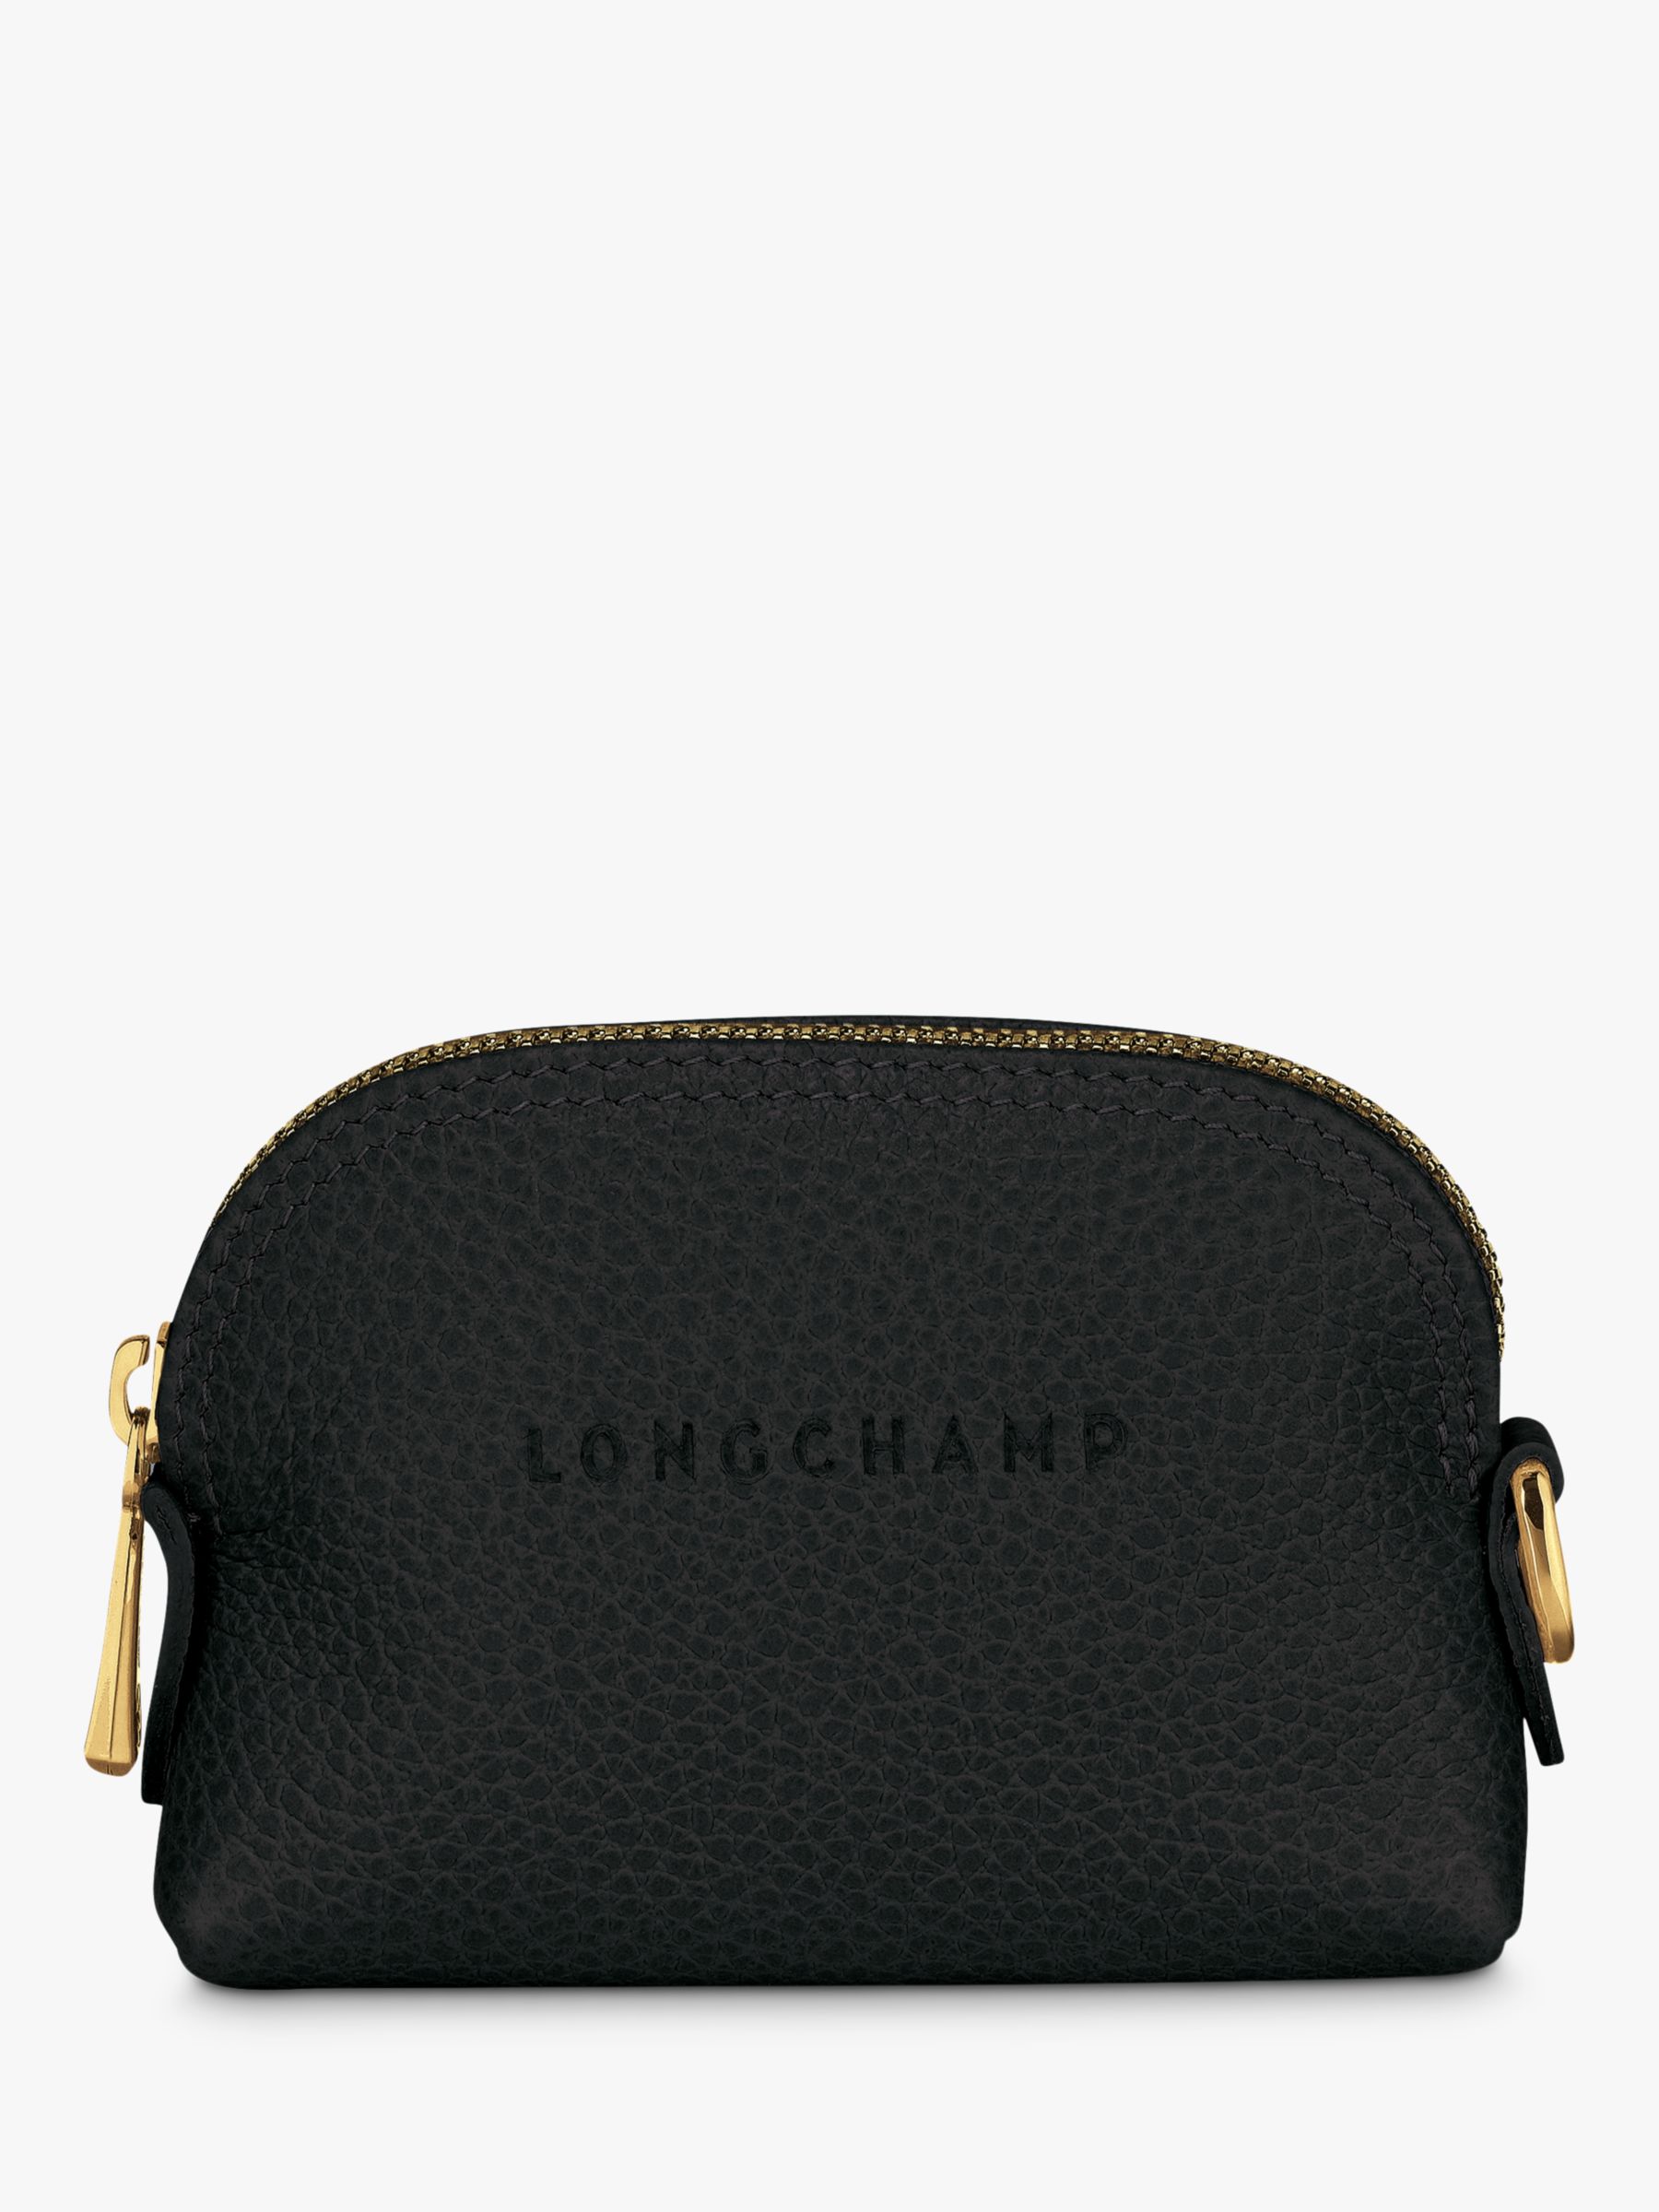 Longchamp Le Foulonné Leather Coin Purse, Black/Gold